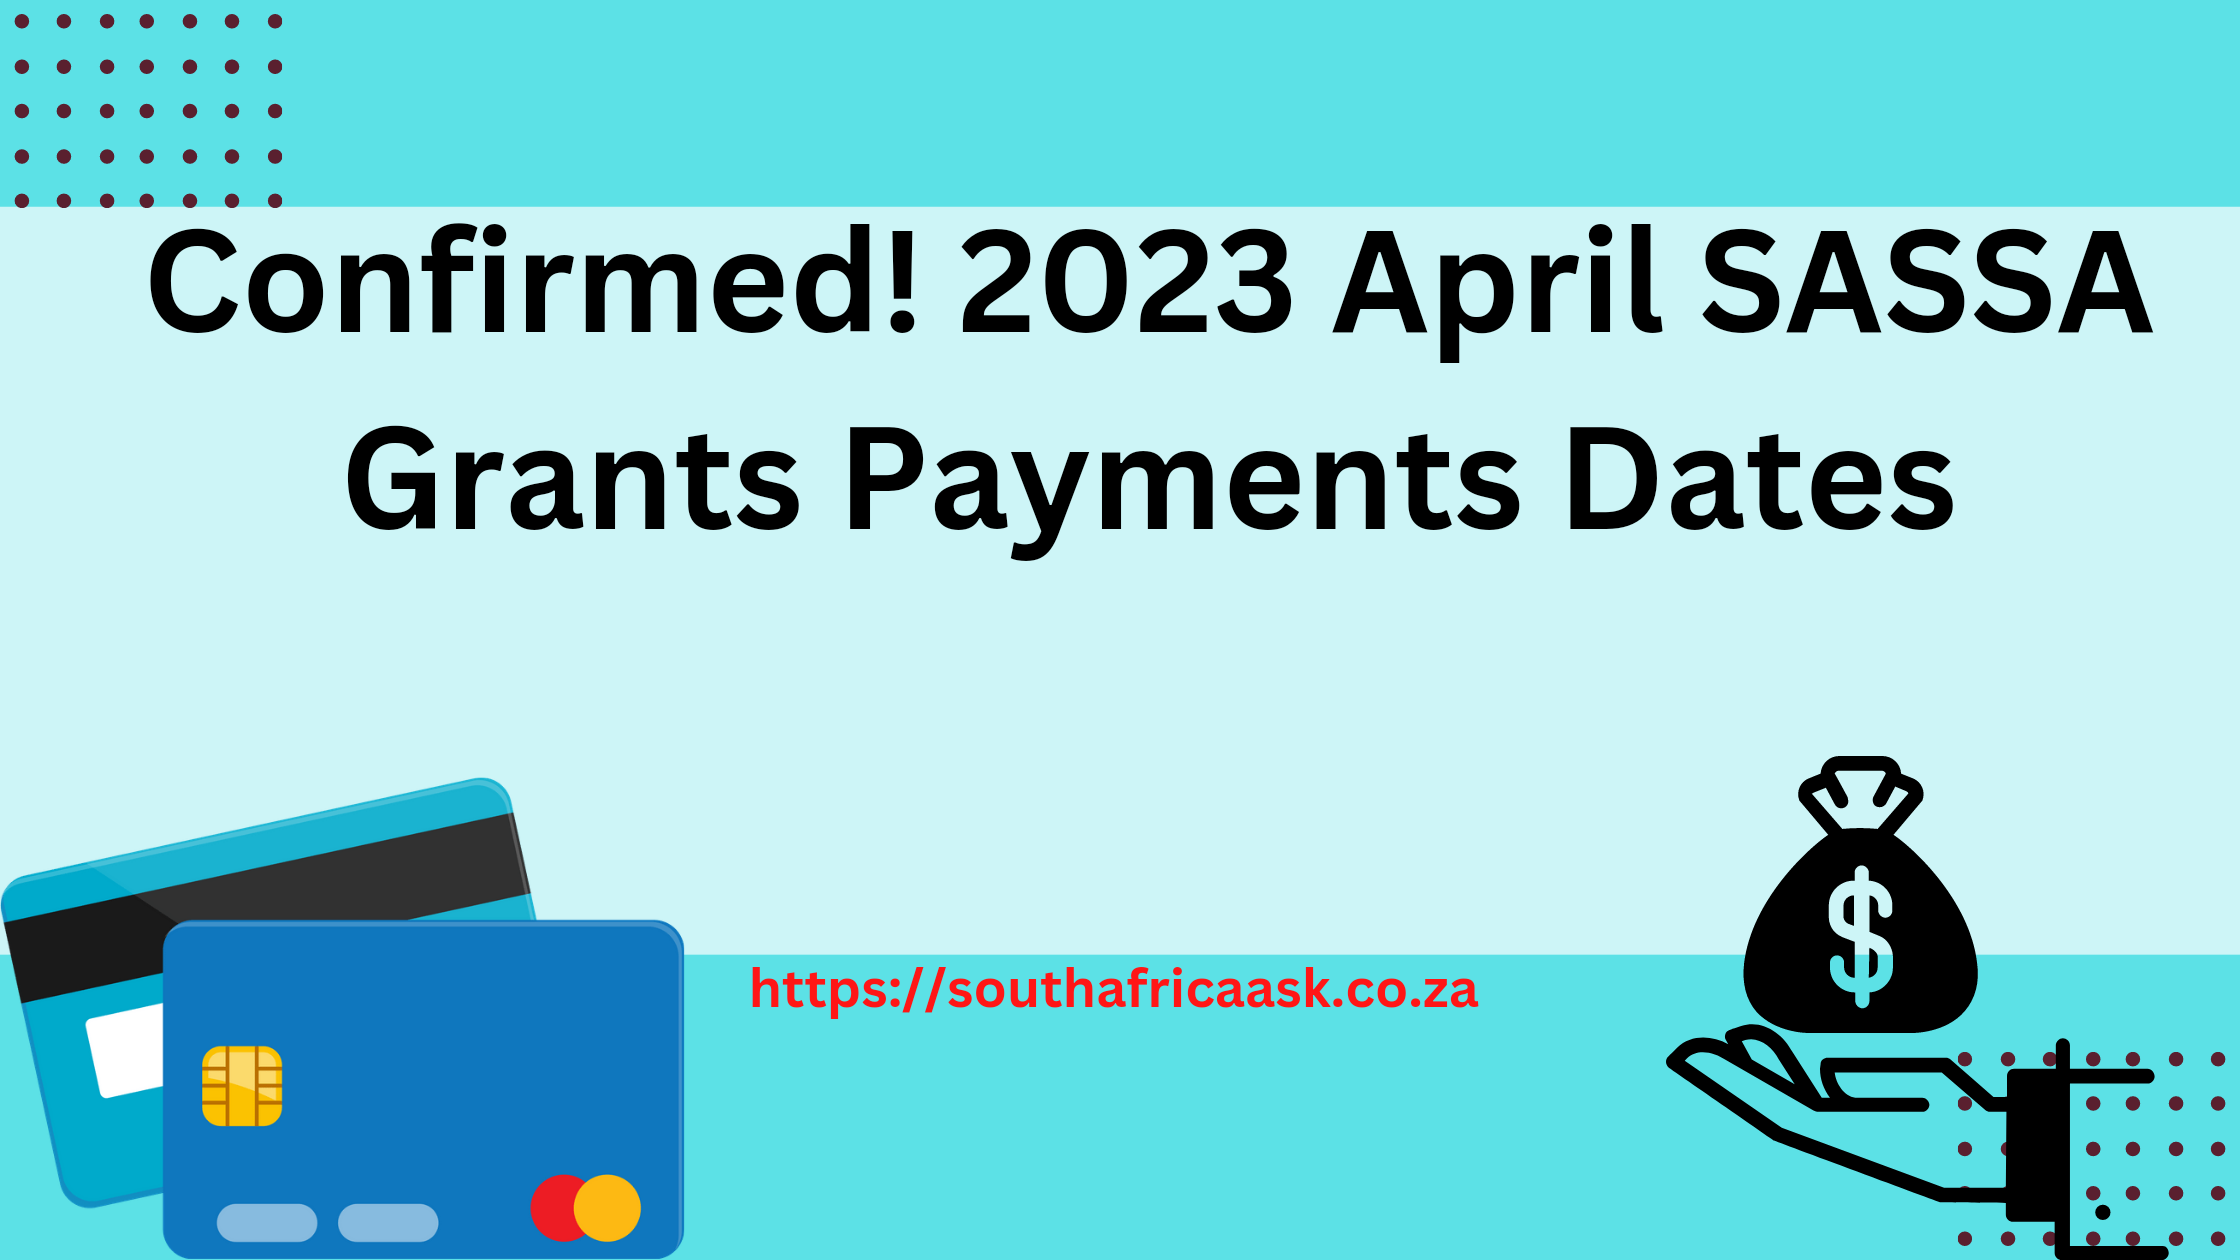 Confirmed! 2023 April SASSA Grants Payments Dates